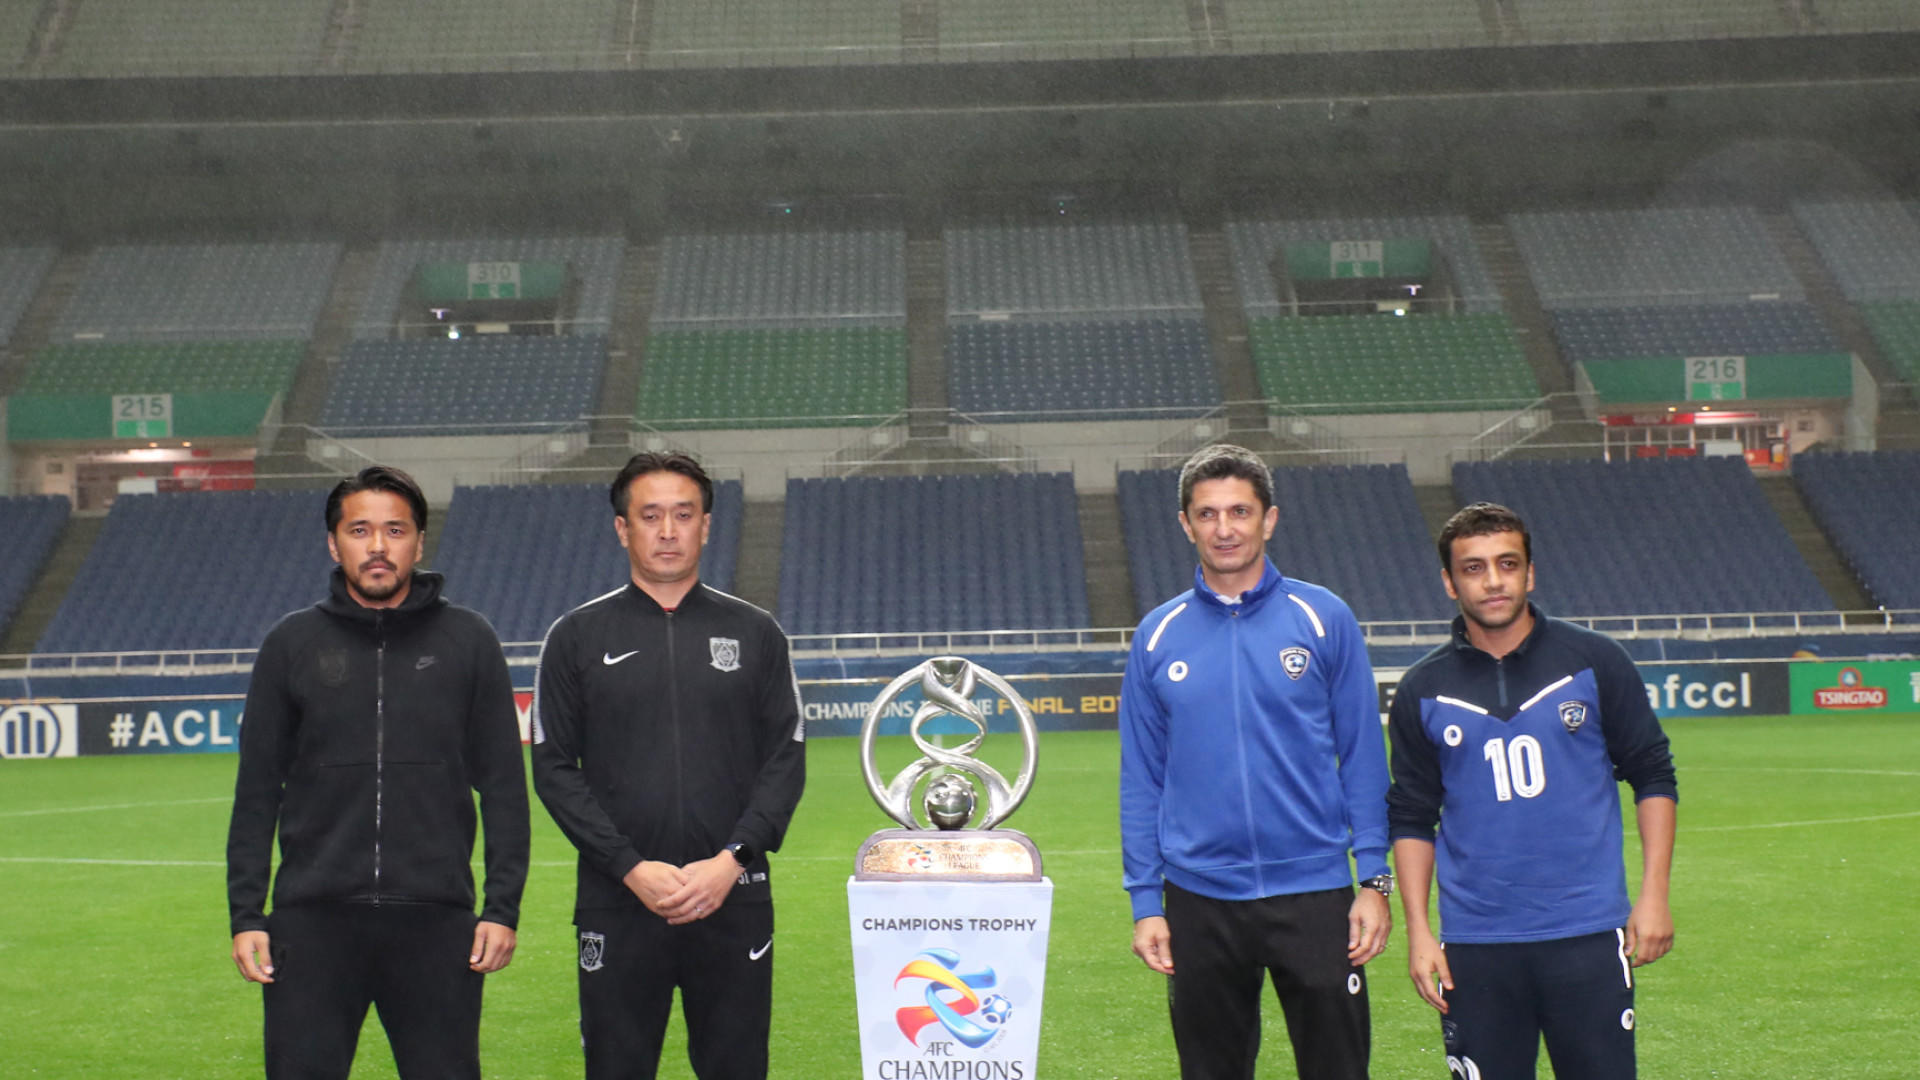 Urawa seeking third title in Asian Champions League final - The